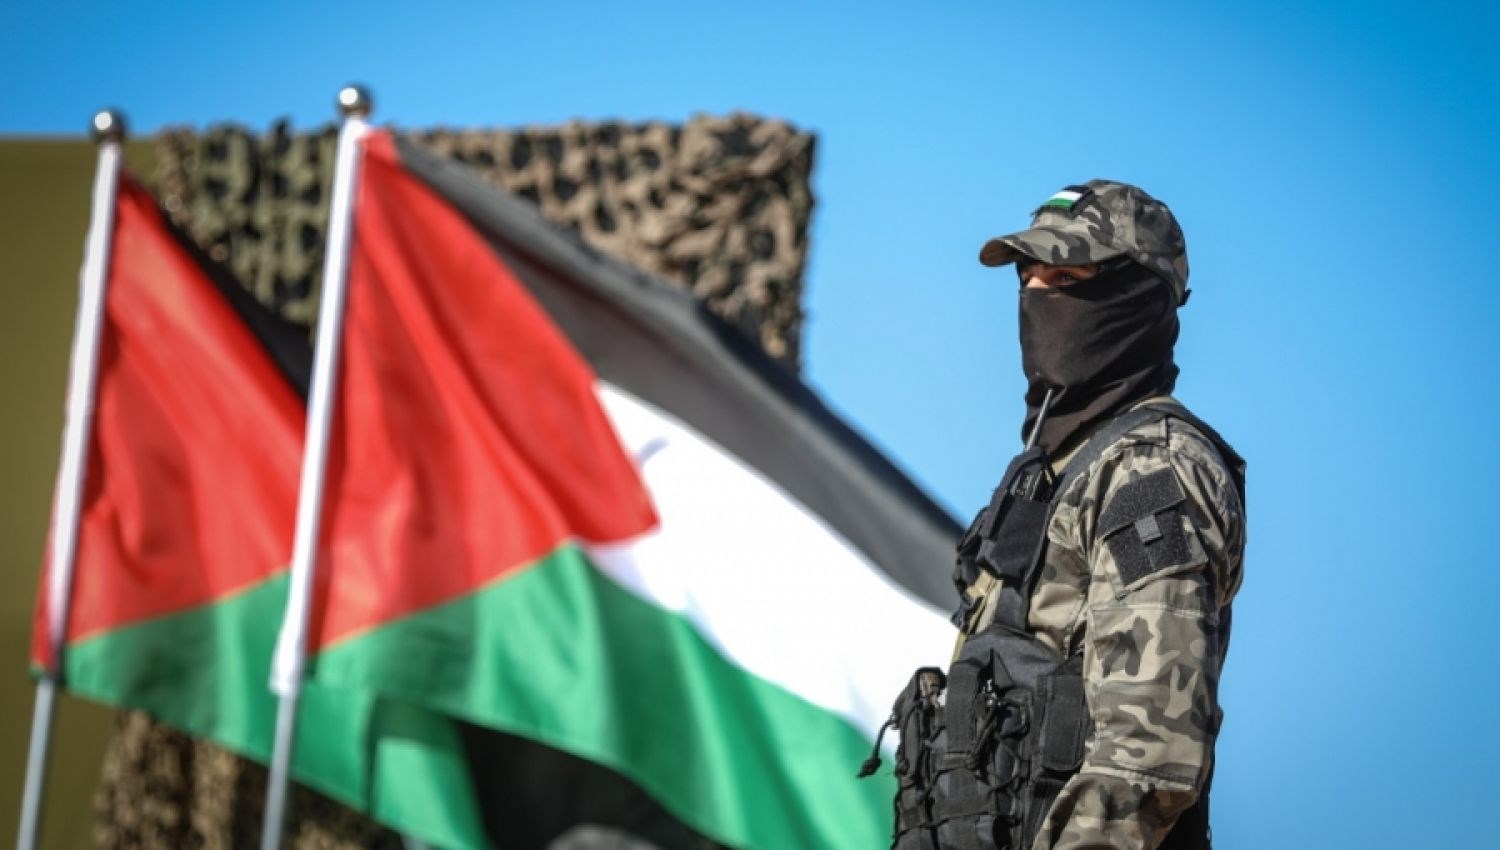 فصائل فلسطينية تستنكر التصنيف البريطاني بشأن "حماس"